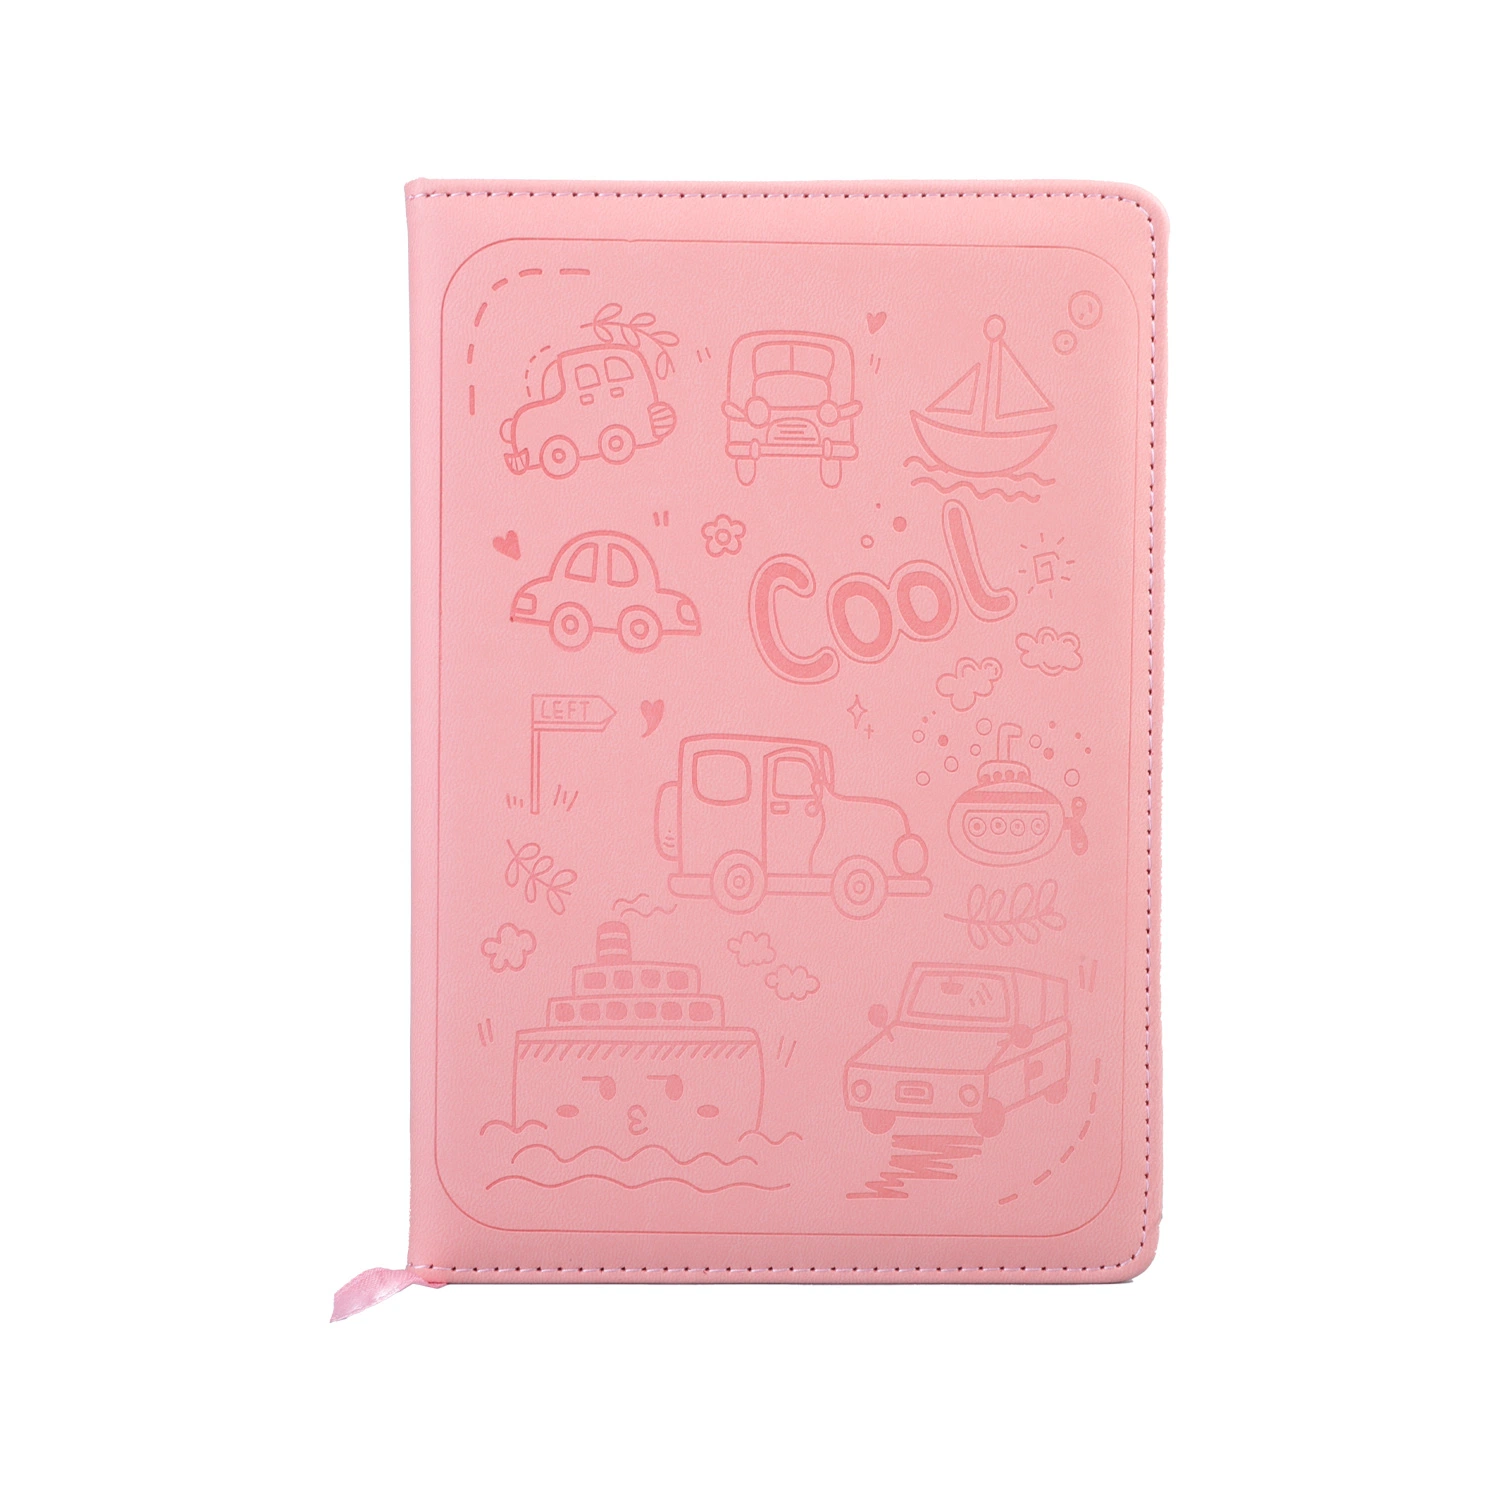 Caderno de Escola de papel rígido rosa Stationery com PU serrilhado